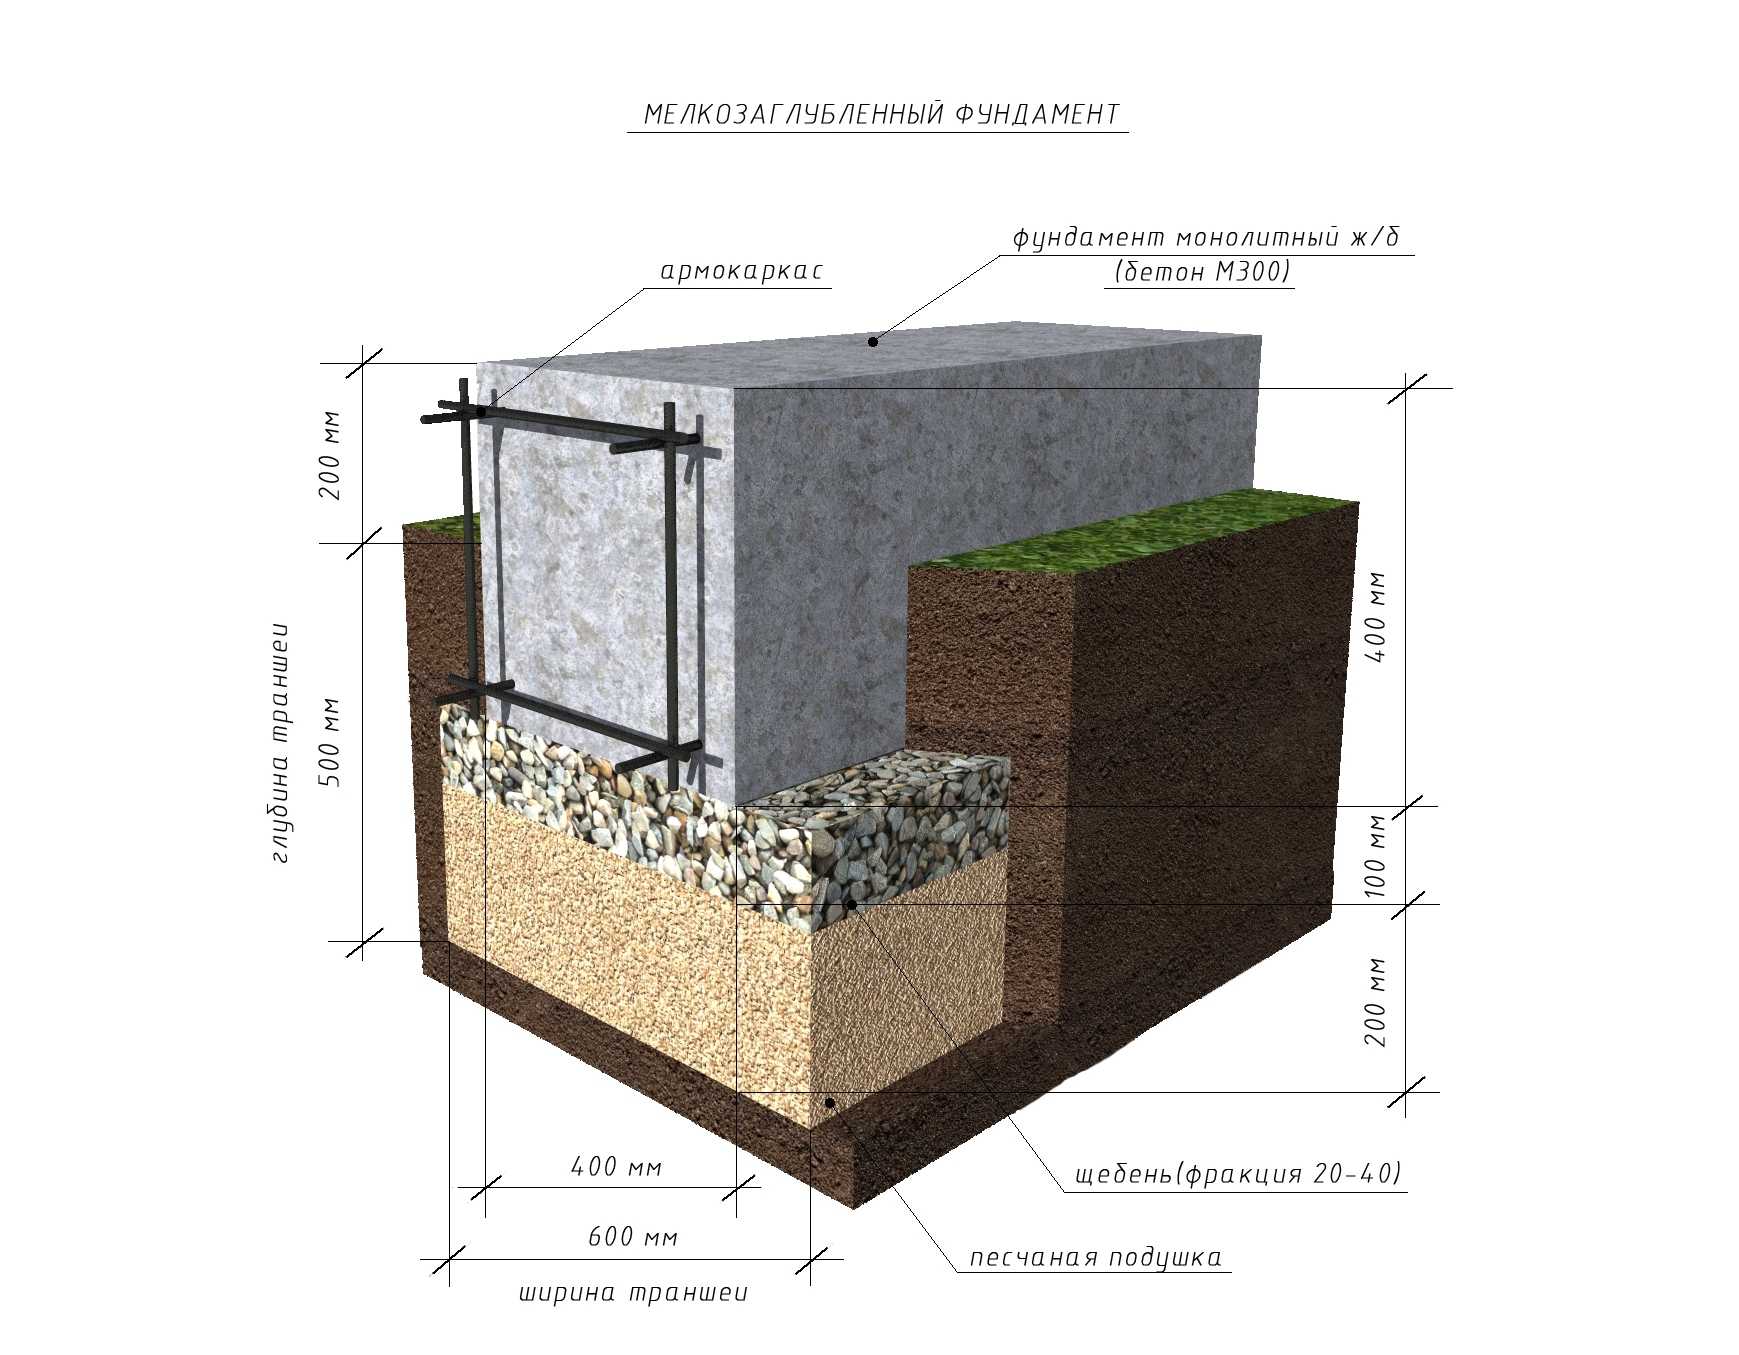 Ленточный монолитный фундамент – поэтапная технология строительства своими руками: расчет, материал, разметка, опалубка, армирование, заливка бетона, гидроизоляция, утепление, ошибки